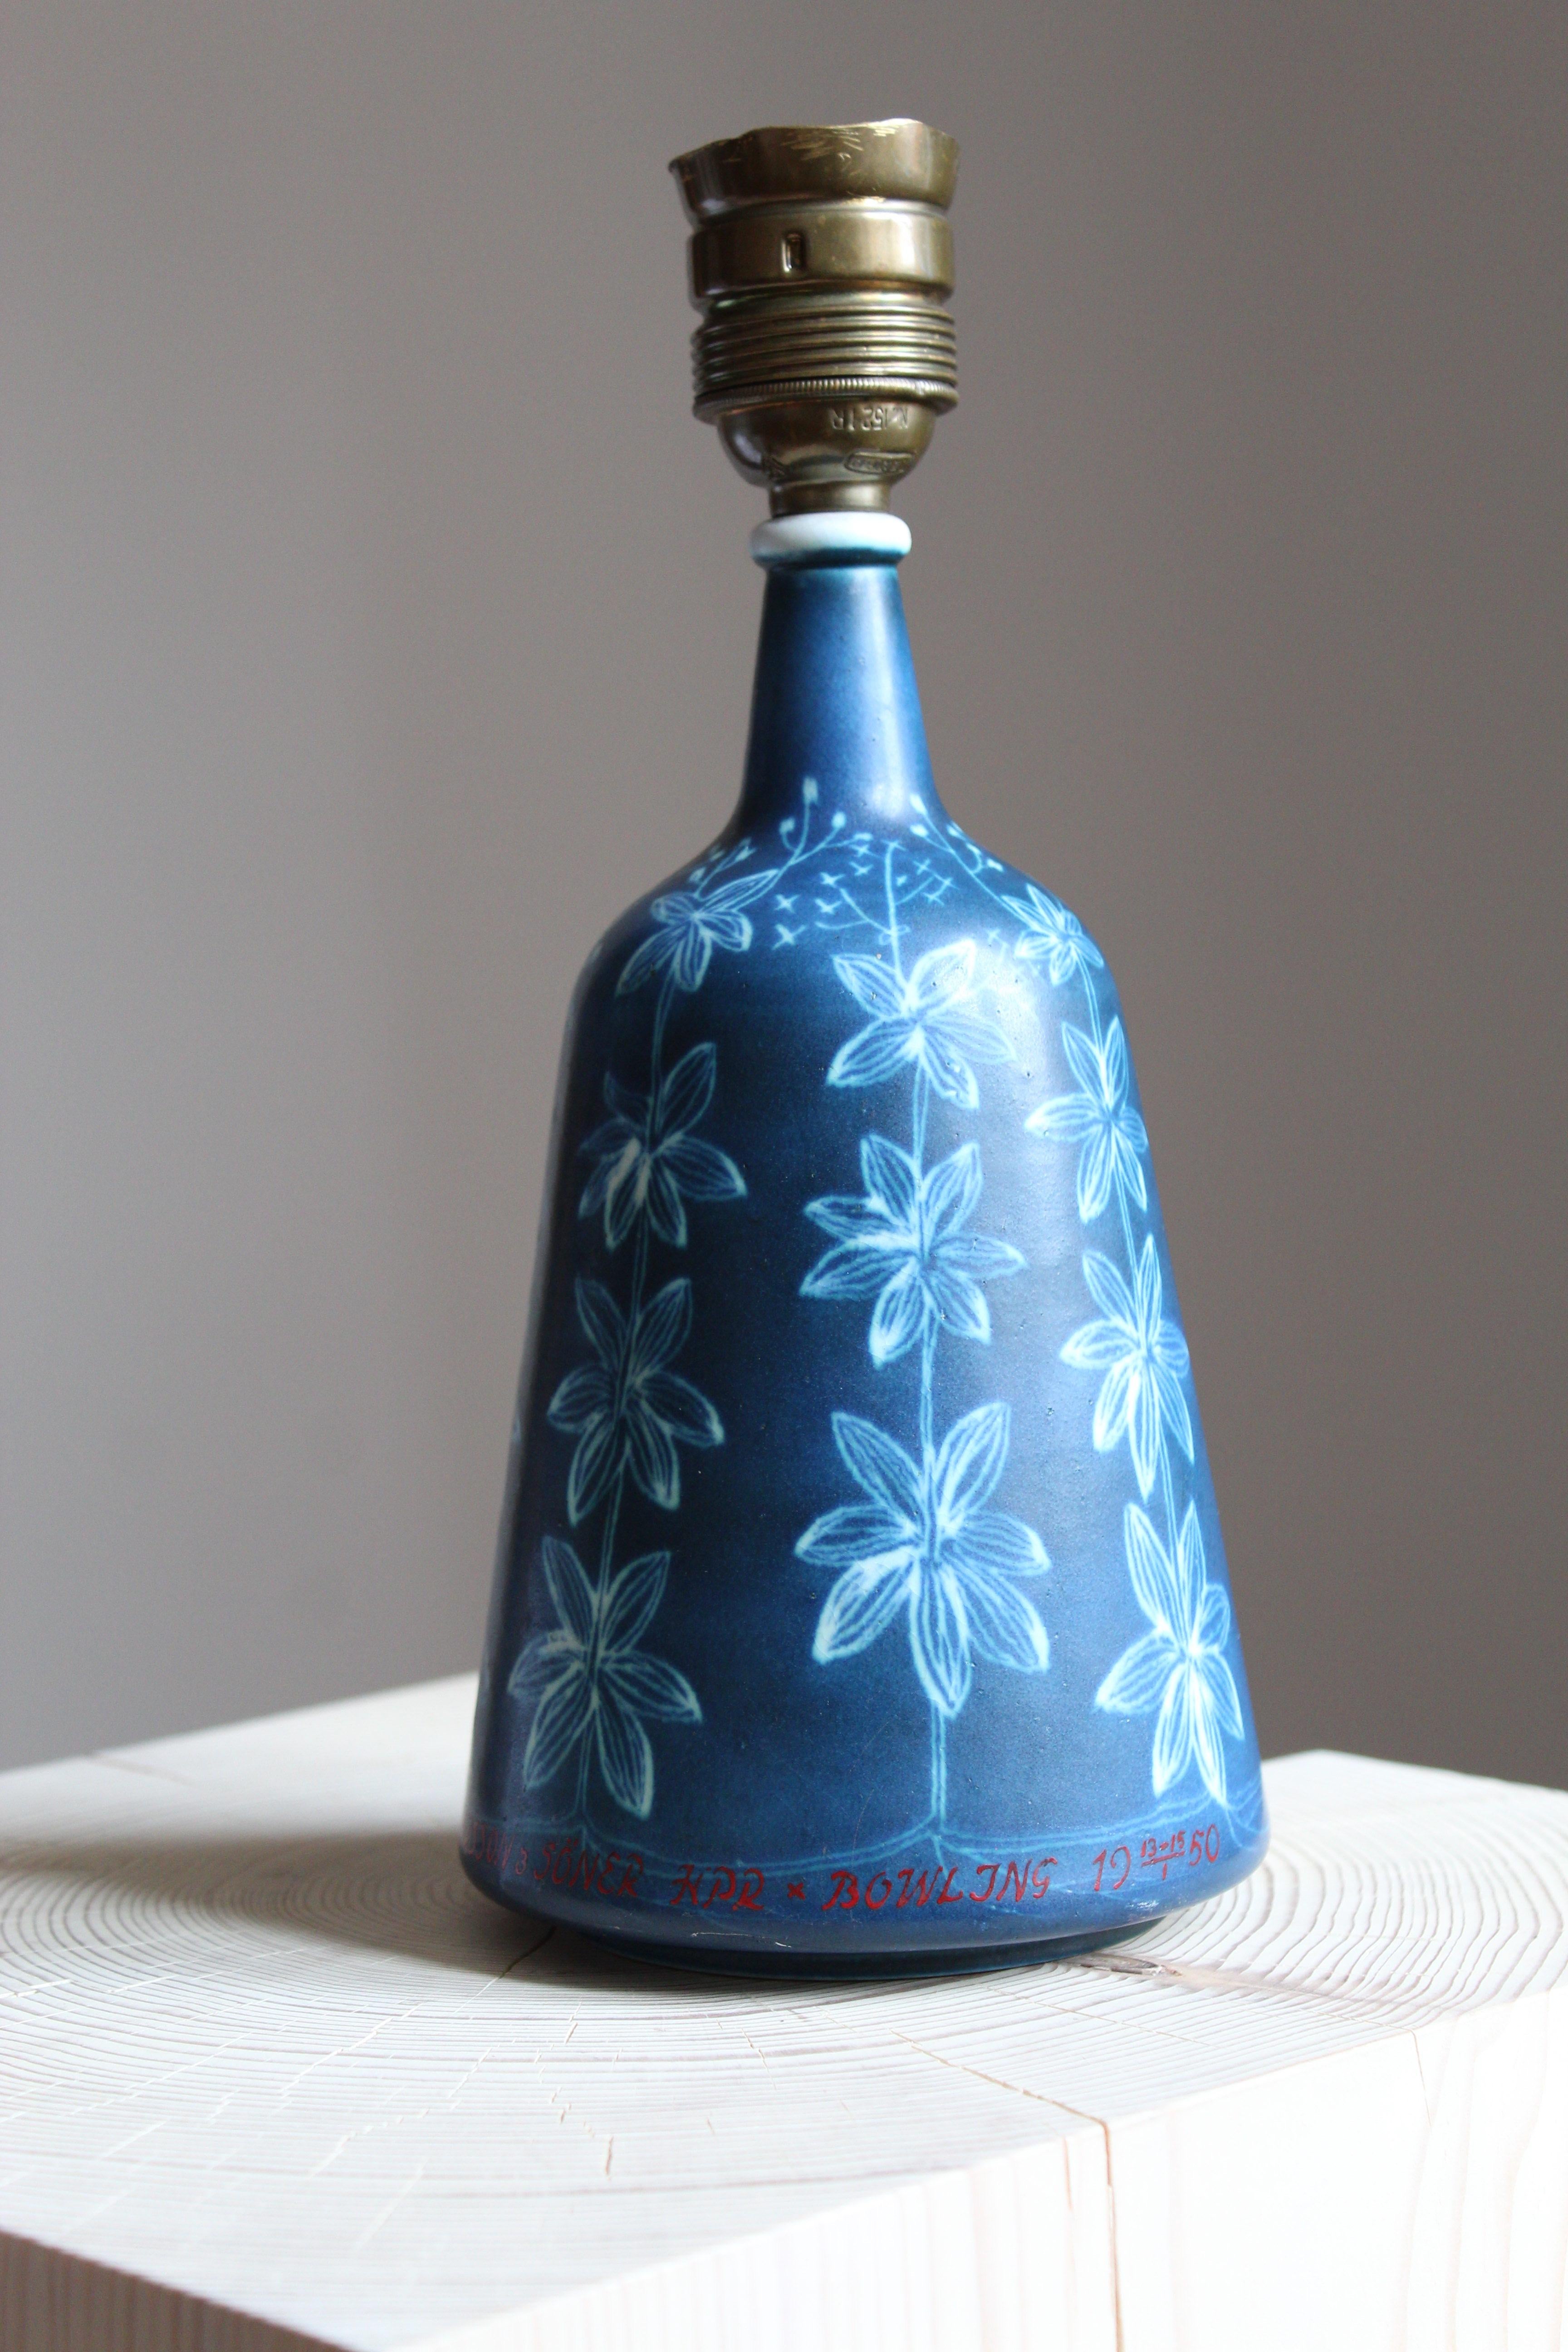 European Hertha Bengtsson, Table Lamp, Blue Glazed Stoneware, Rörstand, Sweden, 1950